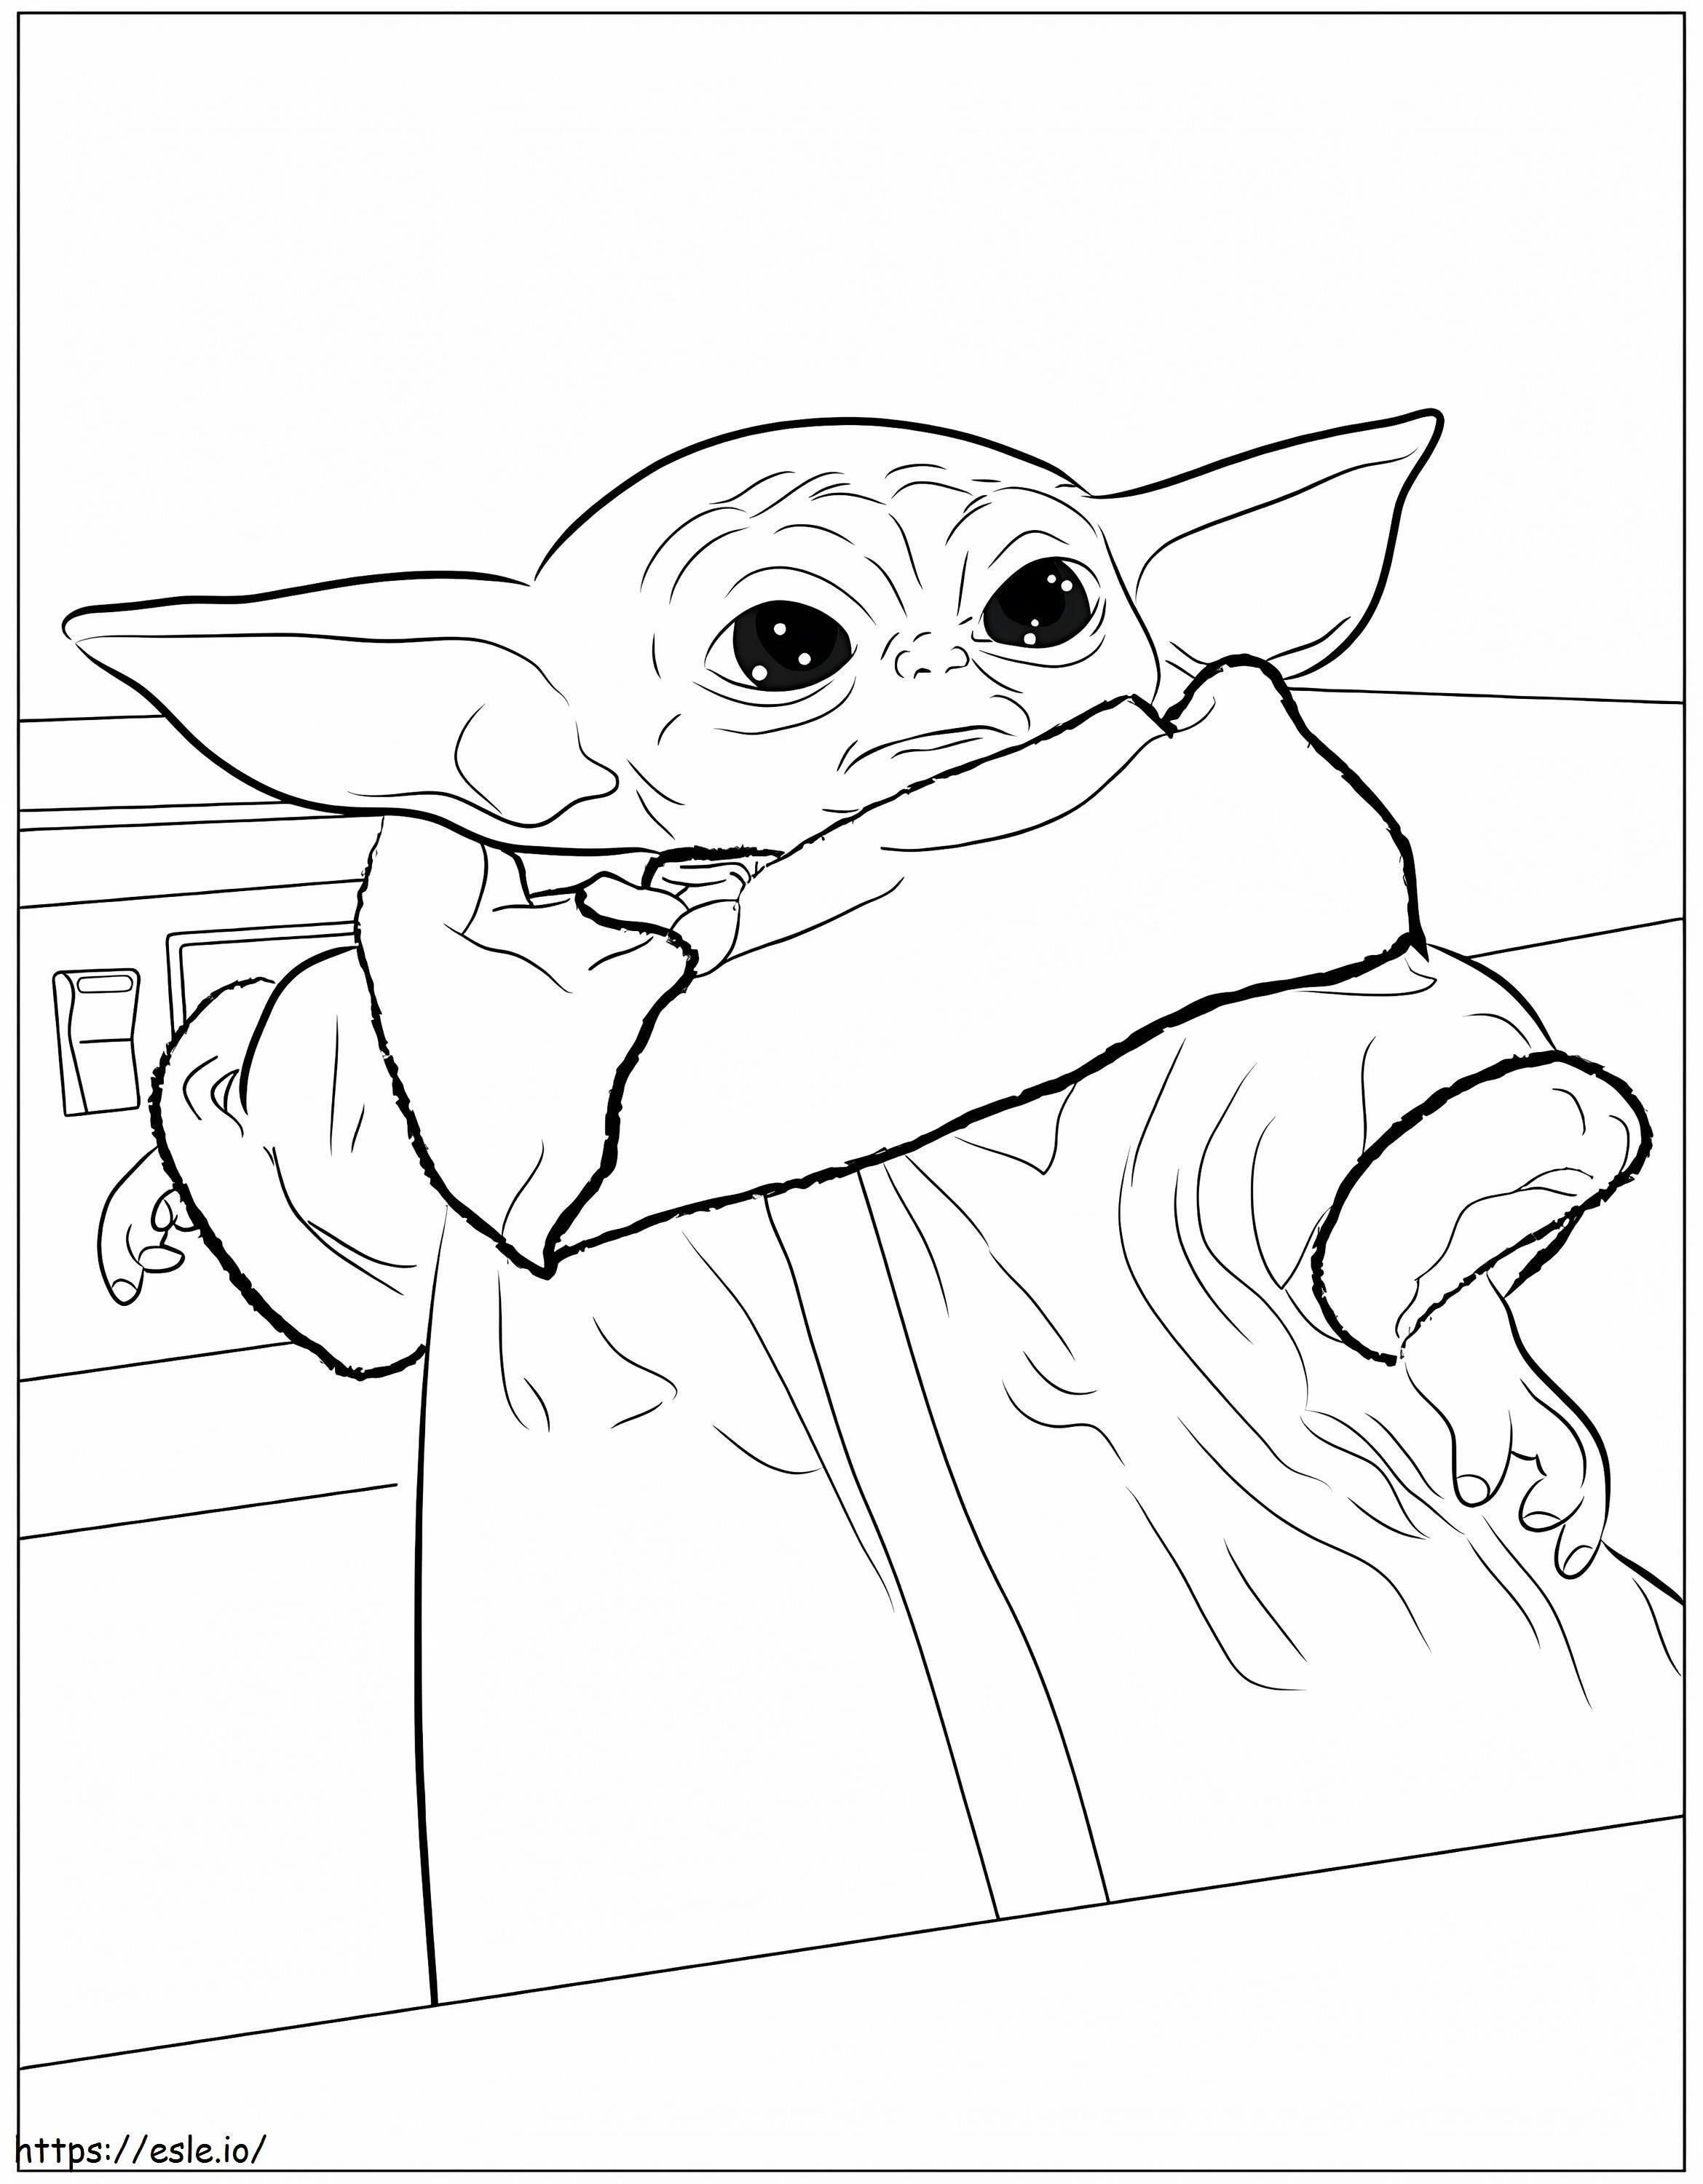 Mały Yoda do wydrukowania kolorowanka